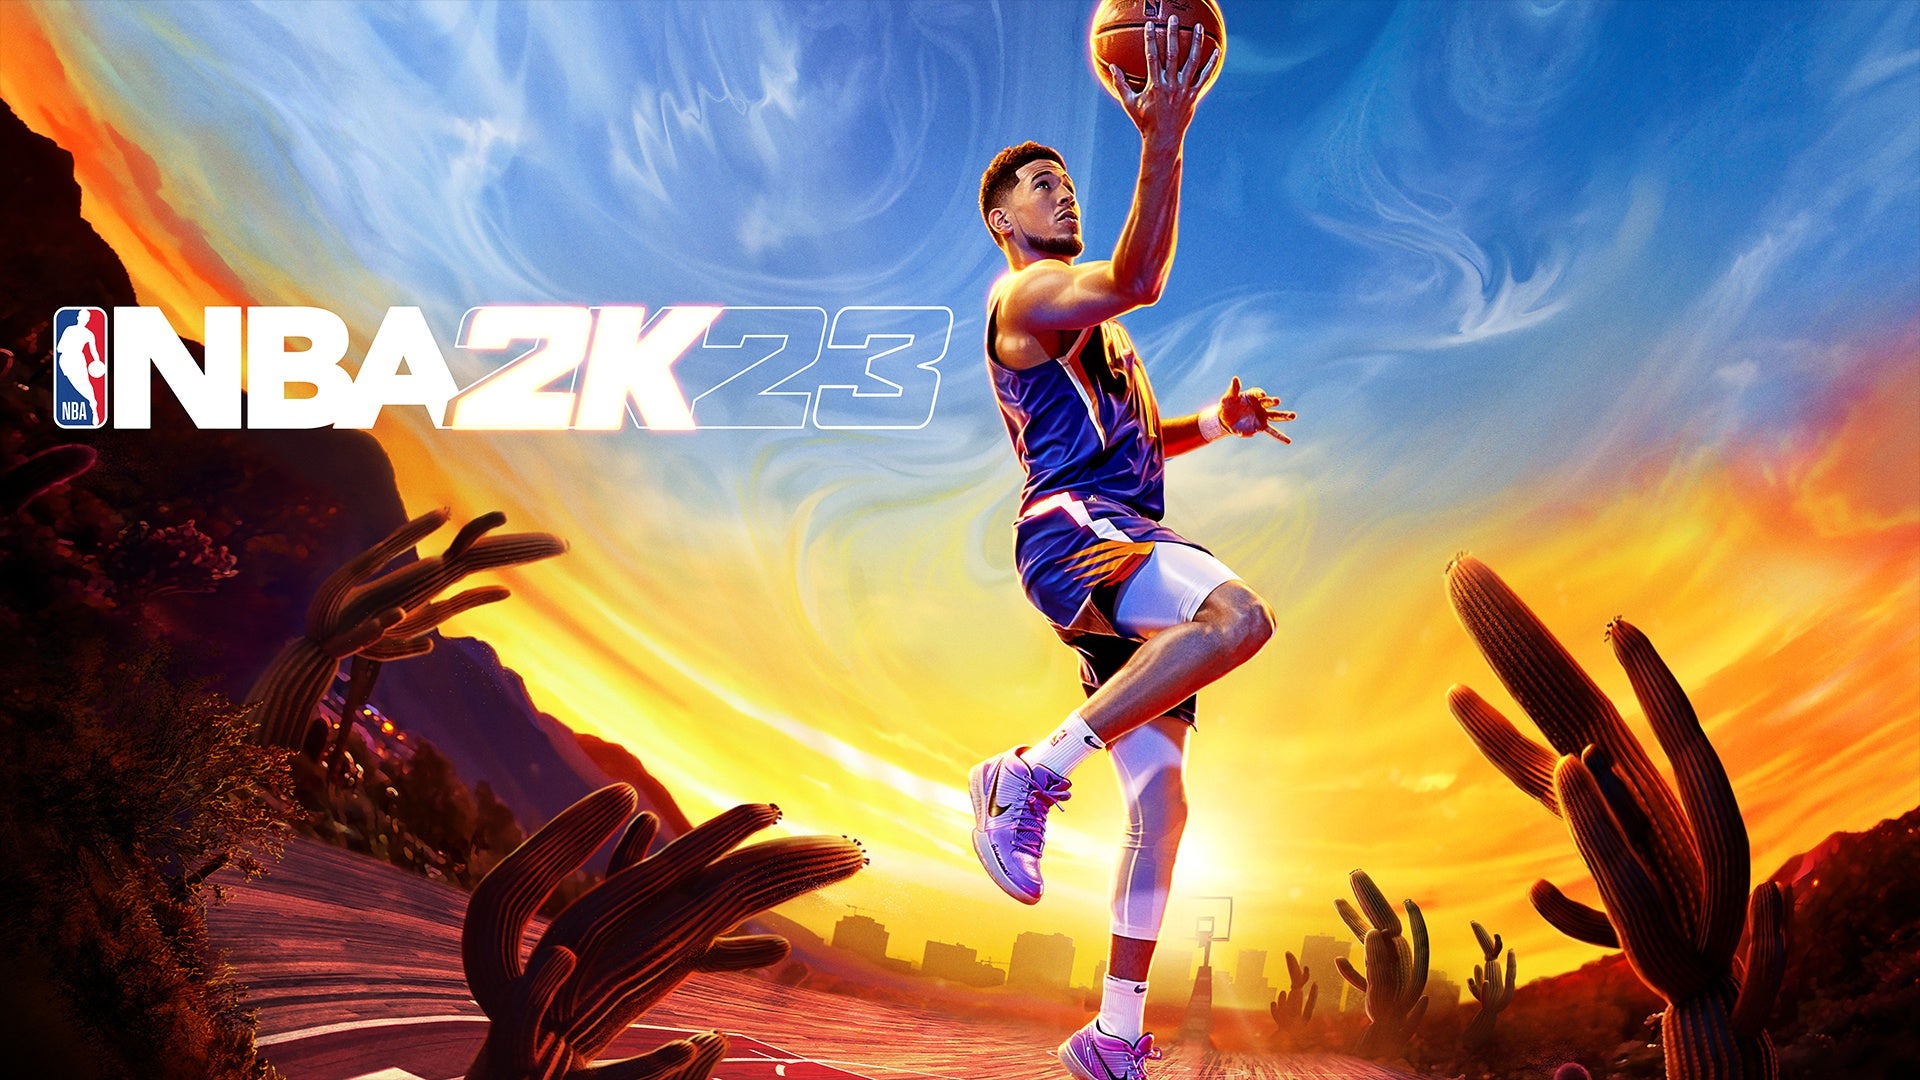 NBA 2K23 dribble requirements: Có phải bạn là người yêu thích chơi game thể thao? Nếu vậy, hãy xem ảnh liên quan đến NBA 2K23 và các yêu cầu về khả năng đi bóng trong trò chơi này. Hãy tìm hiểu những tip và trick cần thiết để trở thành một game thủ xuất sắc trong NBA 2K